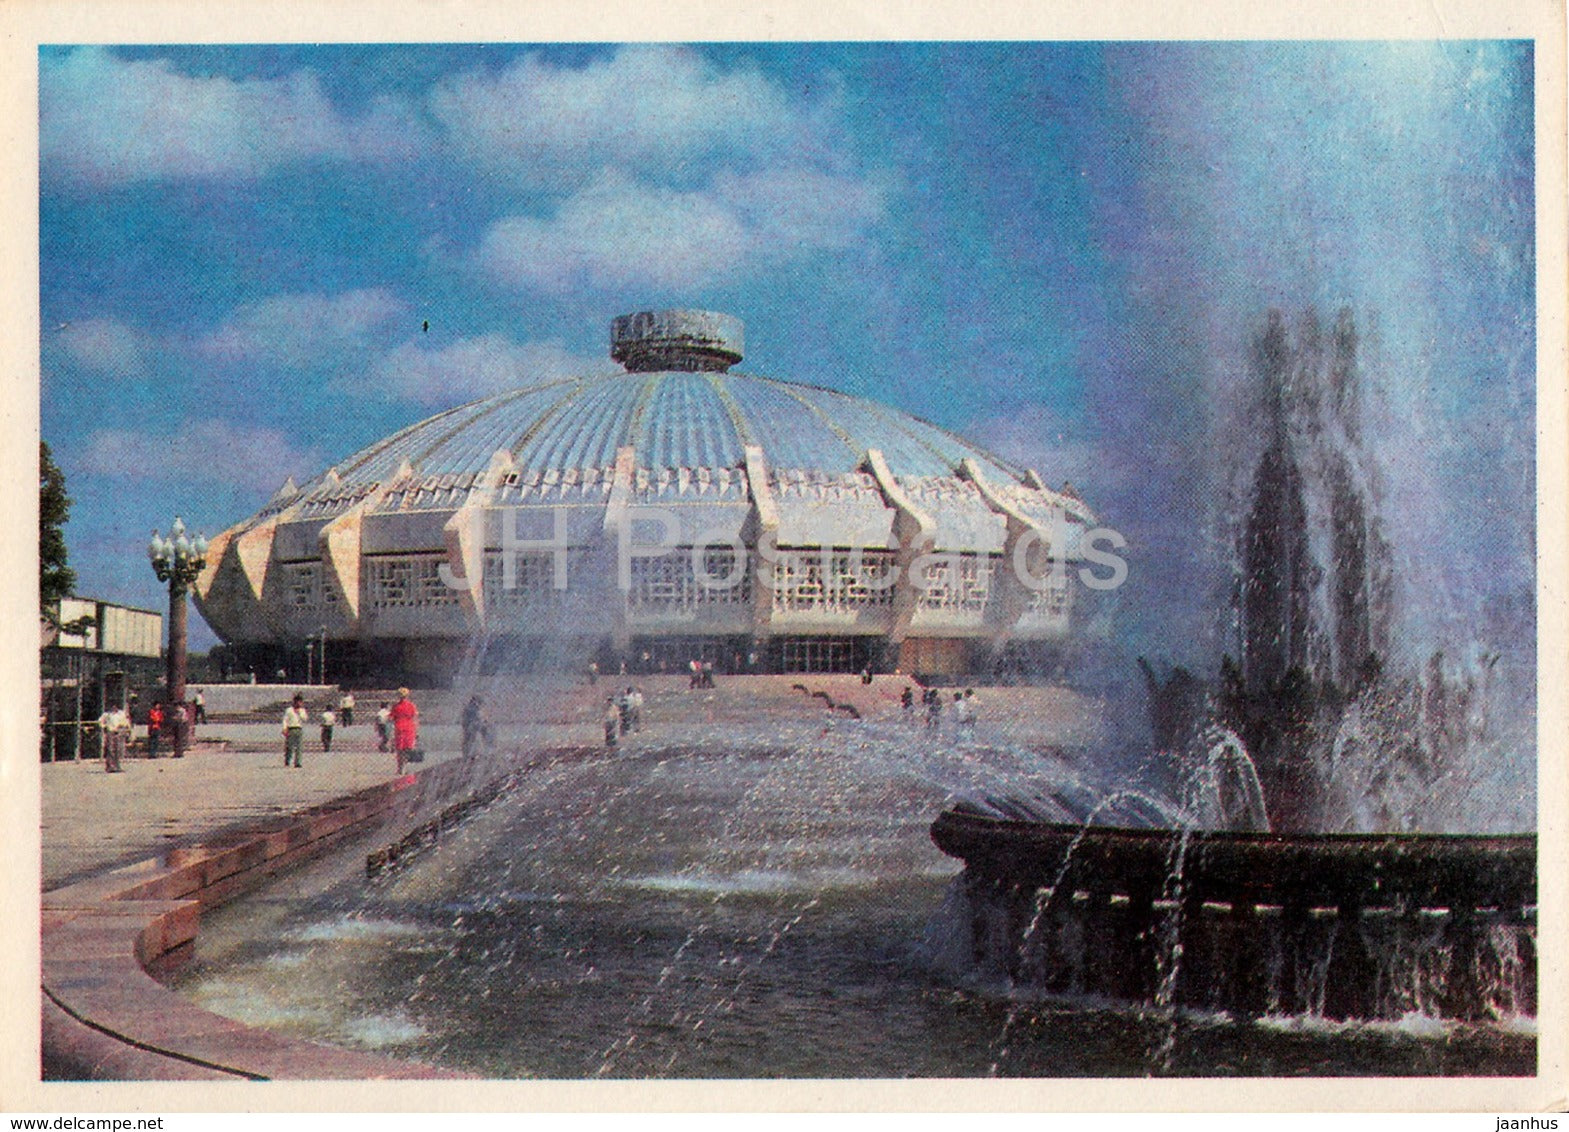 Tashkent - circus - 1981 - Uzbekistan USSR - used - JH Postcards